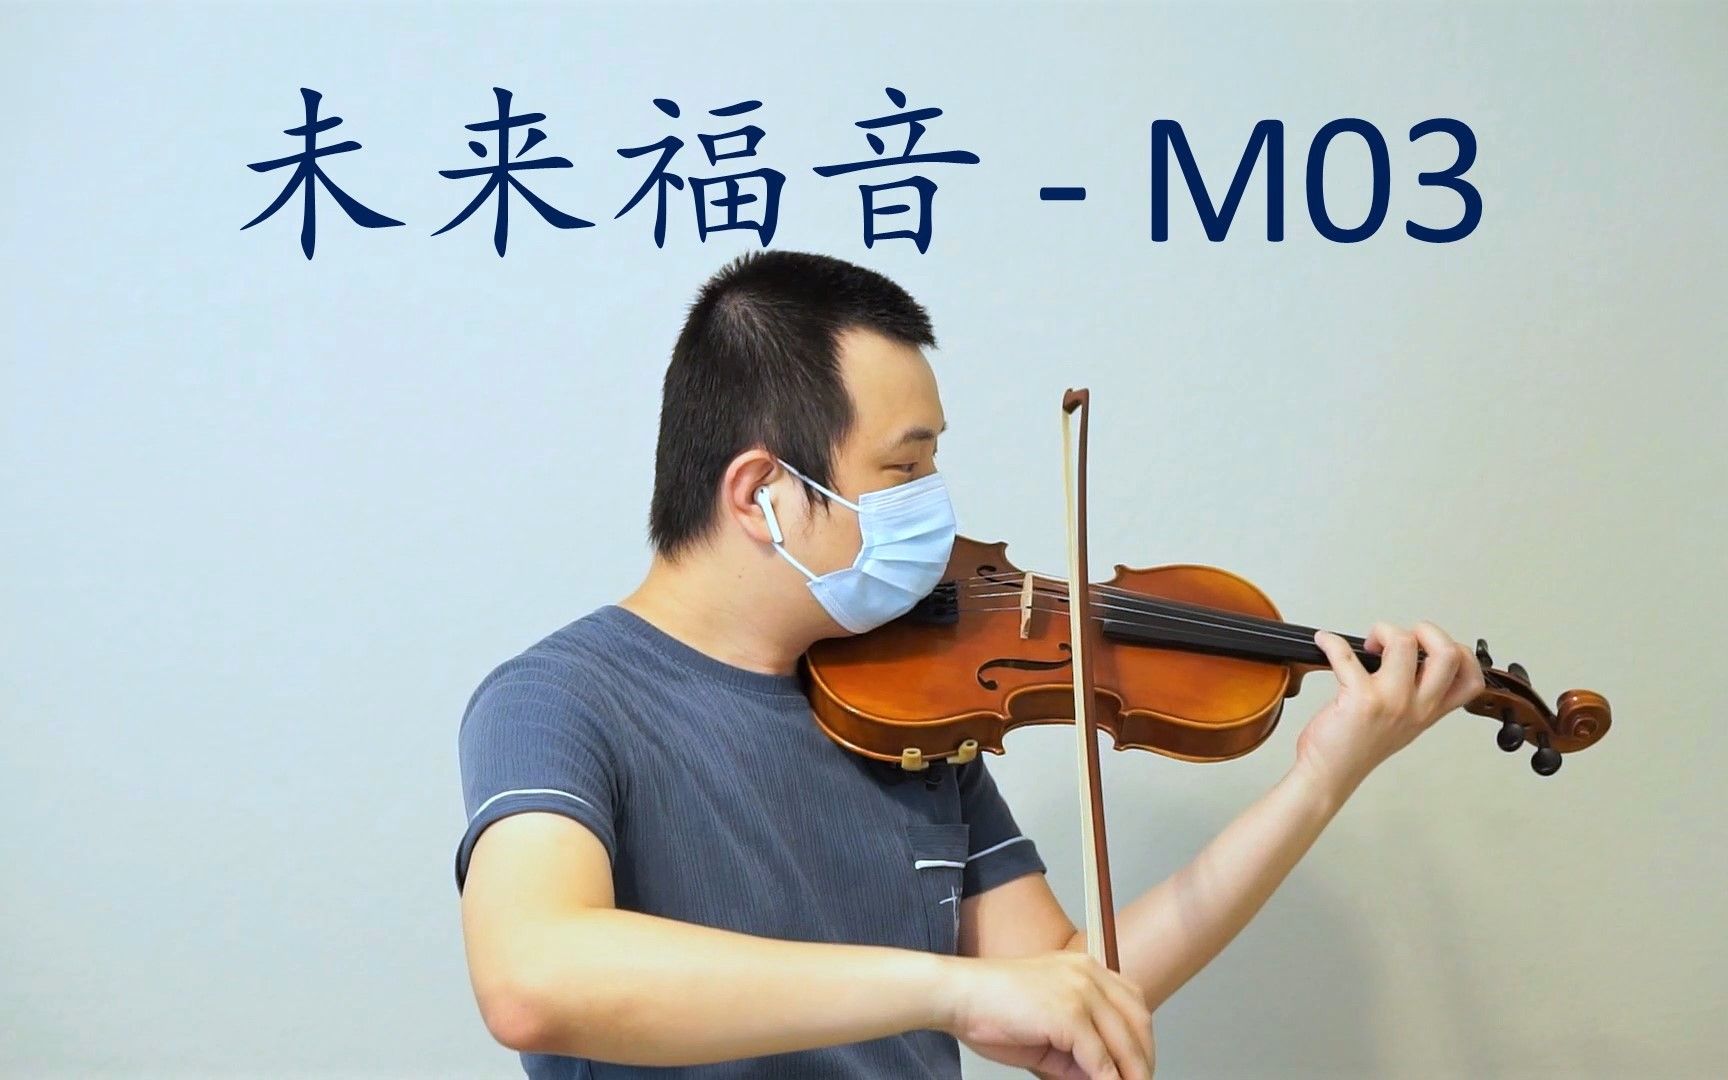 【小提琴】未来福音 - M03 - 空之境界